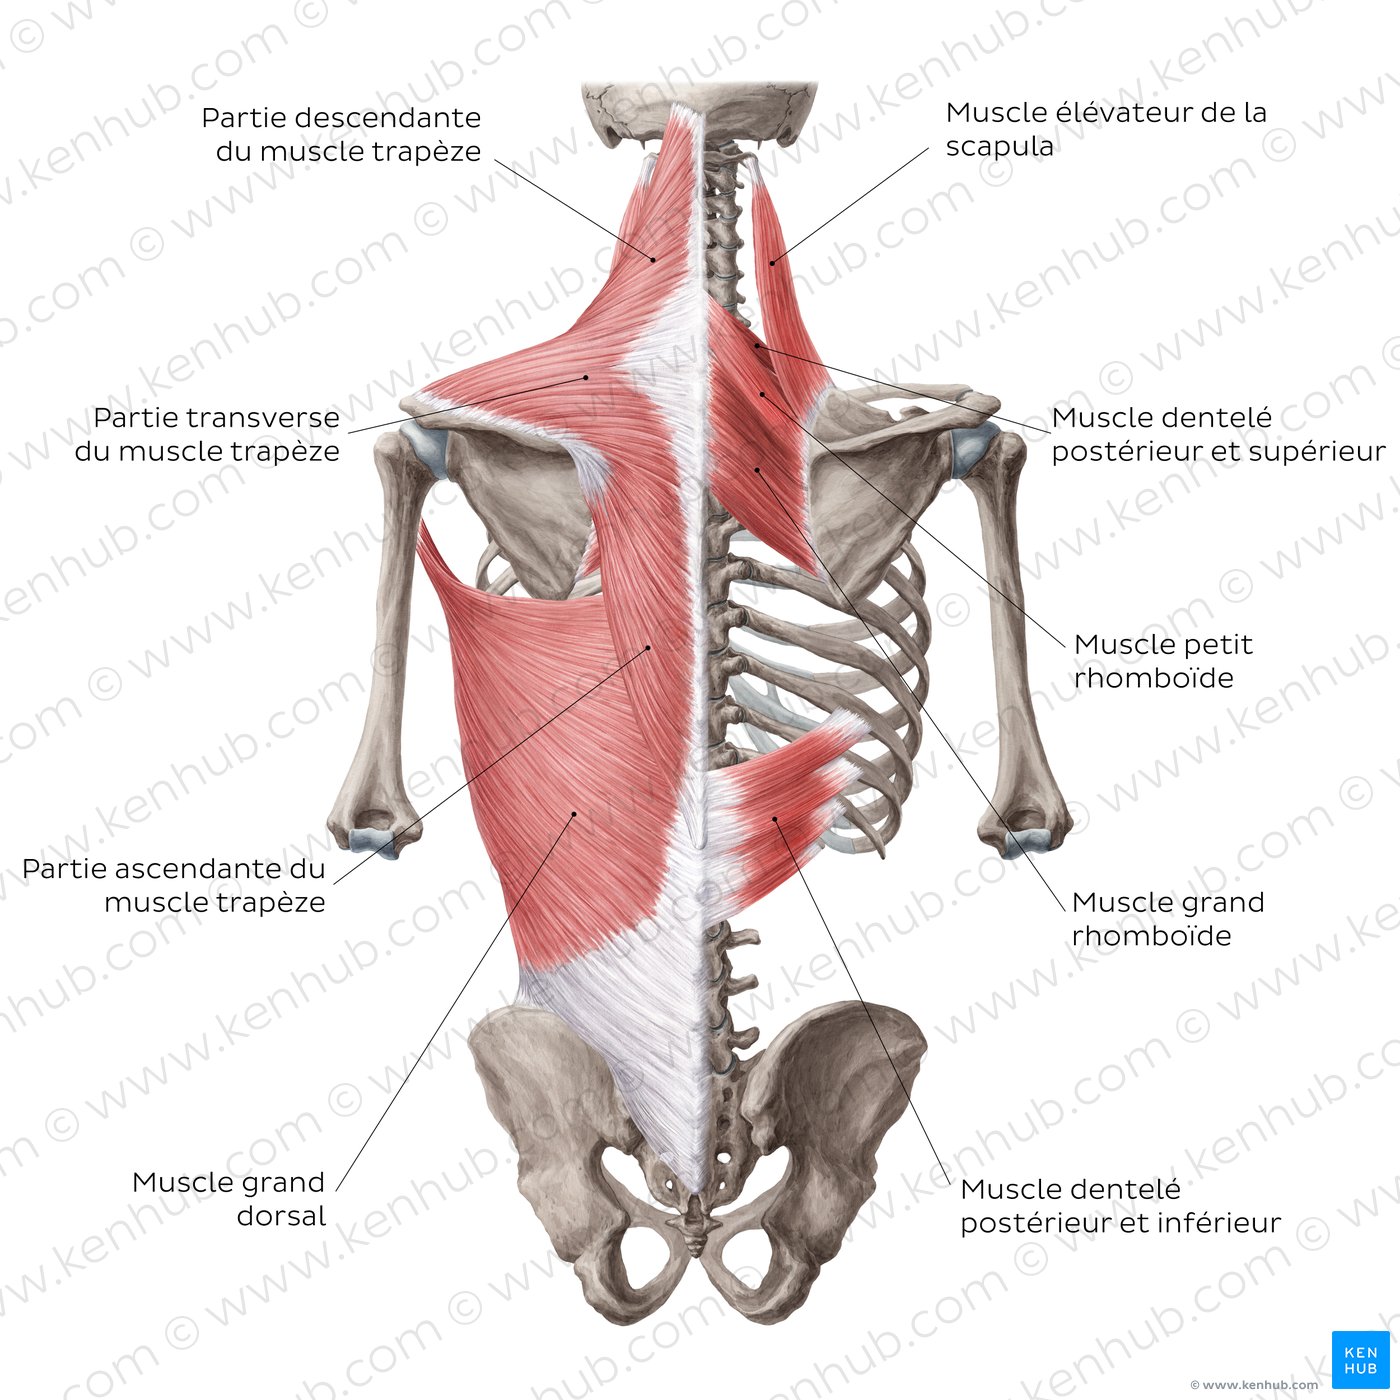 Muscles superficiels du dos (schéma)